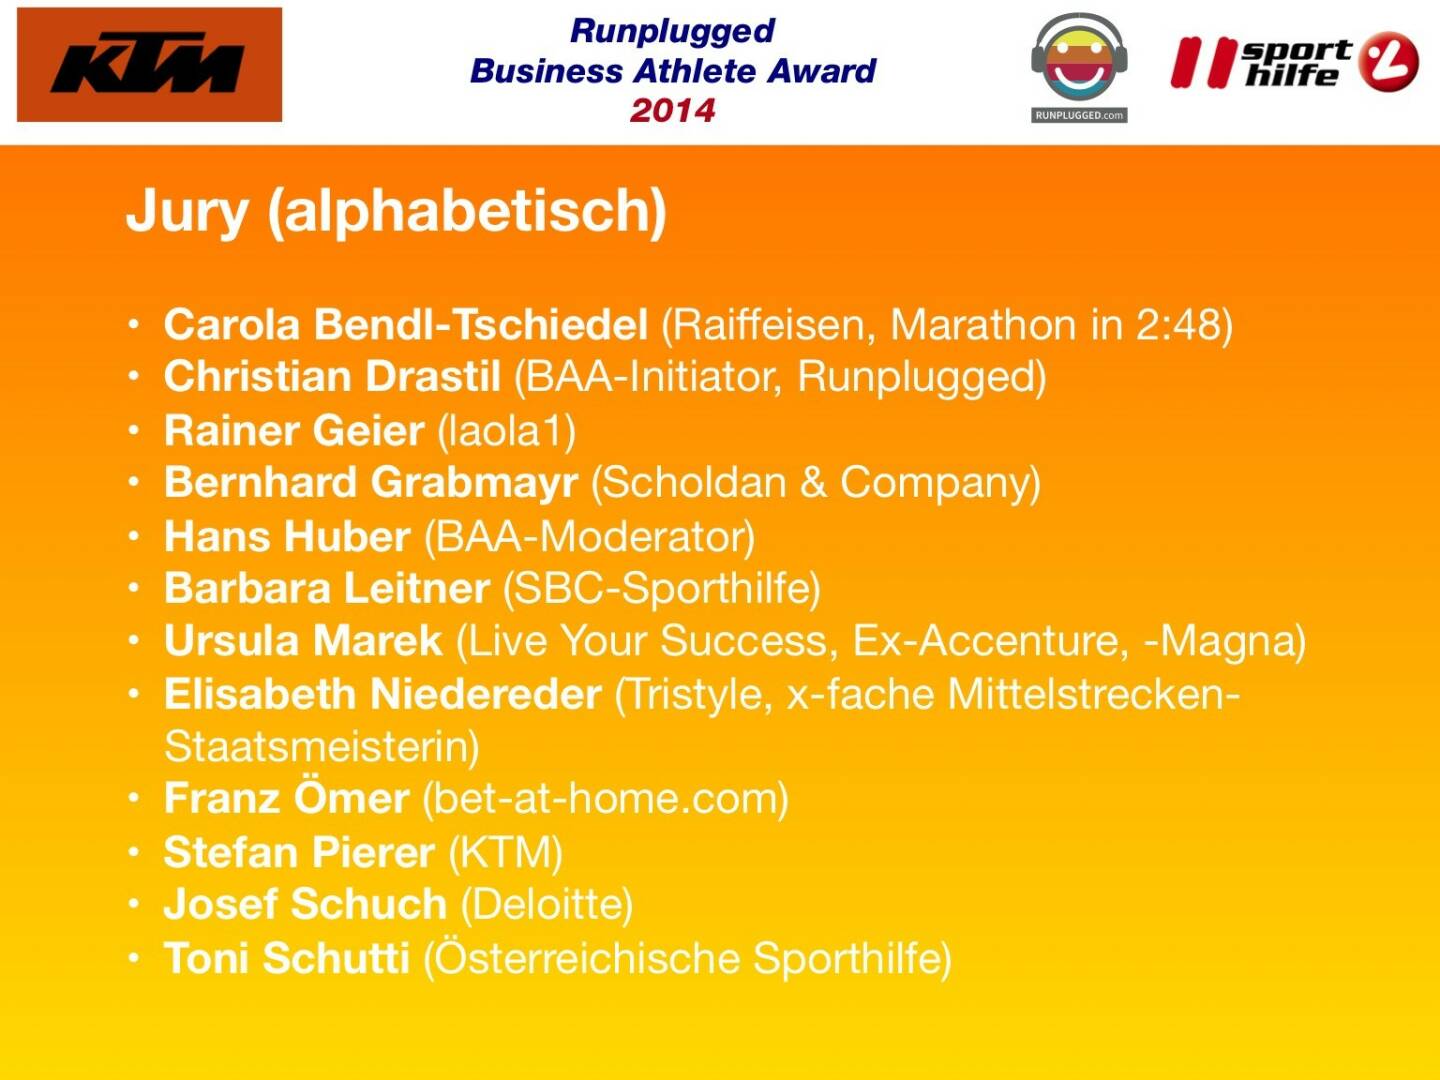 Jury (alphabetisch): Carola Bendl-Tschiedel (Raiffeisen, Marathon in 2:48), Christian Drastil (BAA-Initiator, Runplugged), Rainer Geier (laola1), Bernhard Grabmayr (Scholdan & Company), Hans Huber (BAA-Moderator), Barbara Leitner (SBC-Sporthilfe), Ursula Marek (Live Your Success, Ex-Accenture, -Magna), Elisabeth Niedereder (Tristyle, x-fache Mittelstrecken-Staatsmeisterin), Franz Ömer (bet-at-home.com), Stefan Pierer (KTM), Josef Schuch (Deloitte), Toni Schutti (Österreichische Sporthilfe)